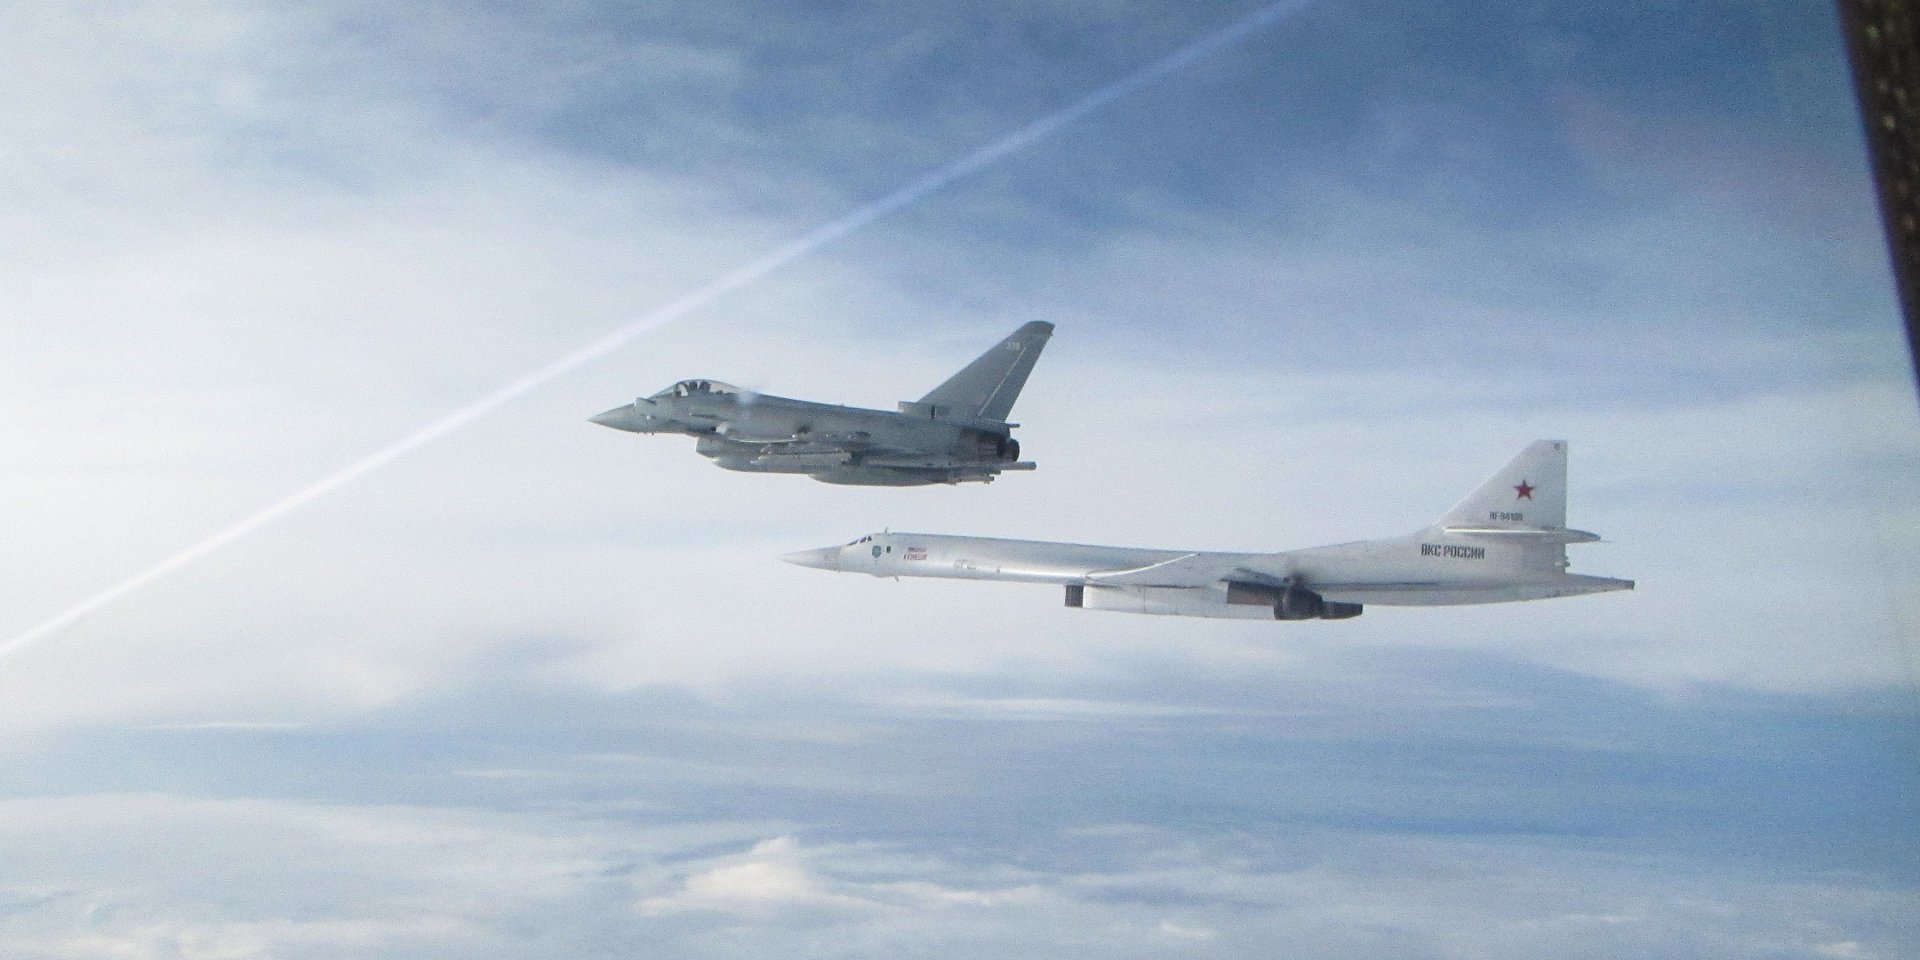 Российские ракетоносцы Ту-160 «Белый лебедь» пересекли границу зоны особого внимания Британии в Северном море (видео)